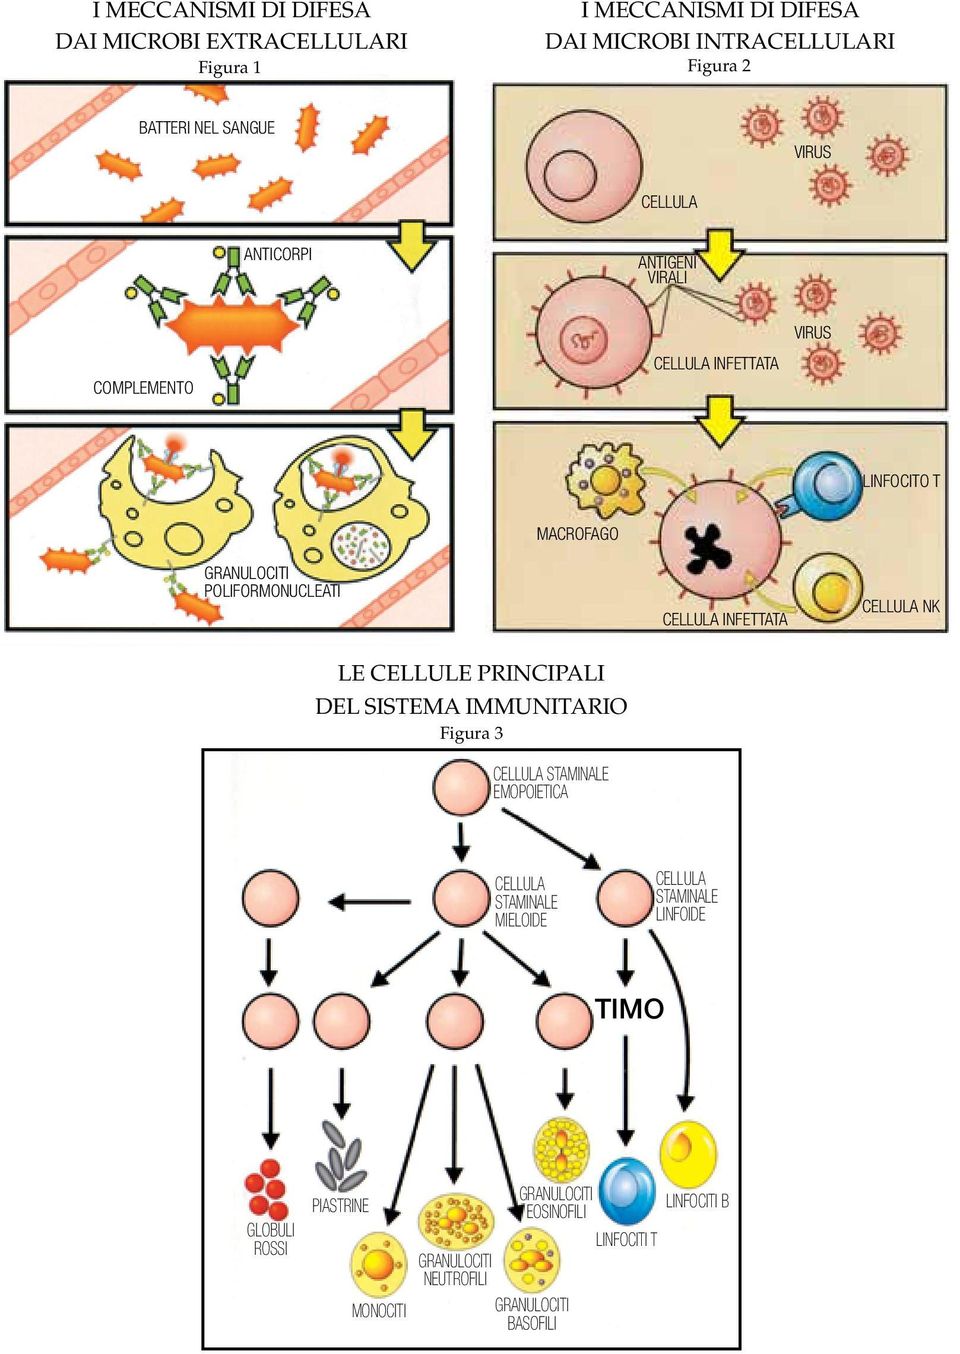 infettata cellula nk LE CELLULE PRINCIPALI DEL SISTEMA IMMUNITARIO Figura 3 cellula staminale emopoietica cellula staminale mieloide cellula